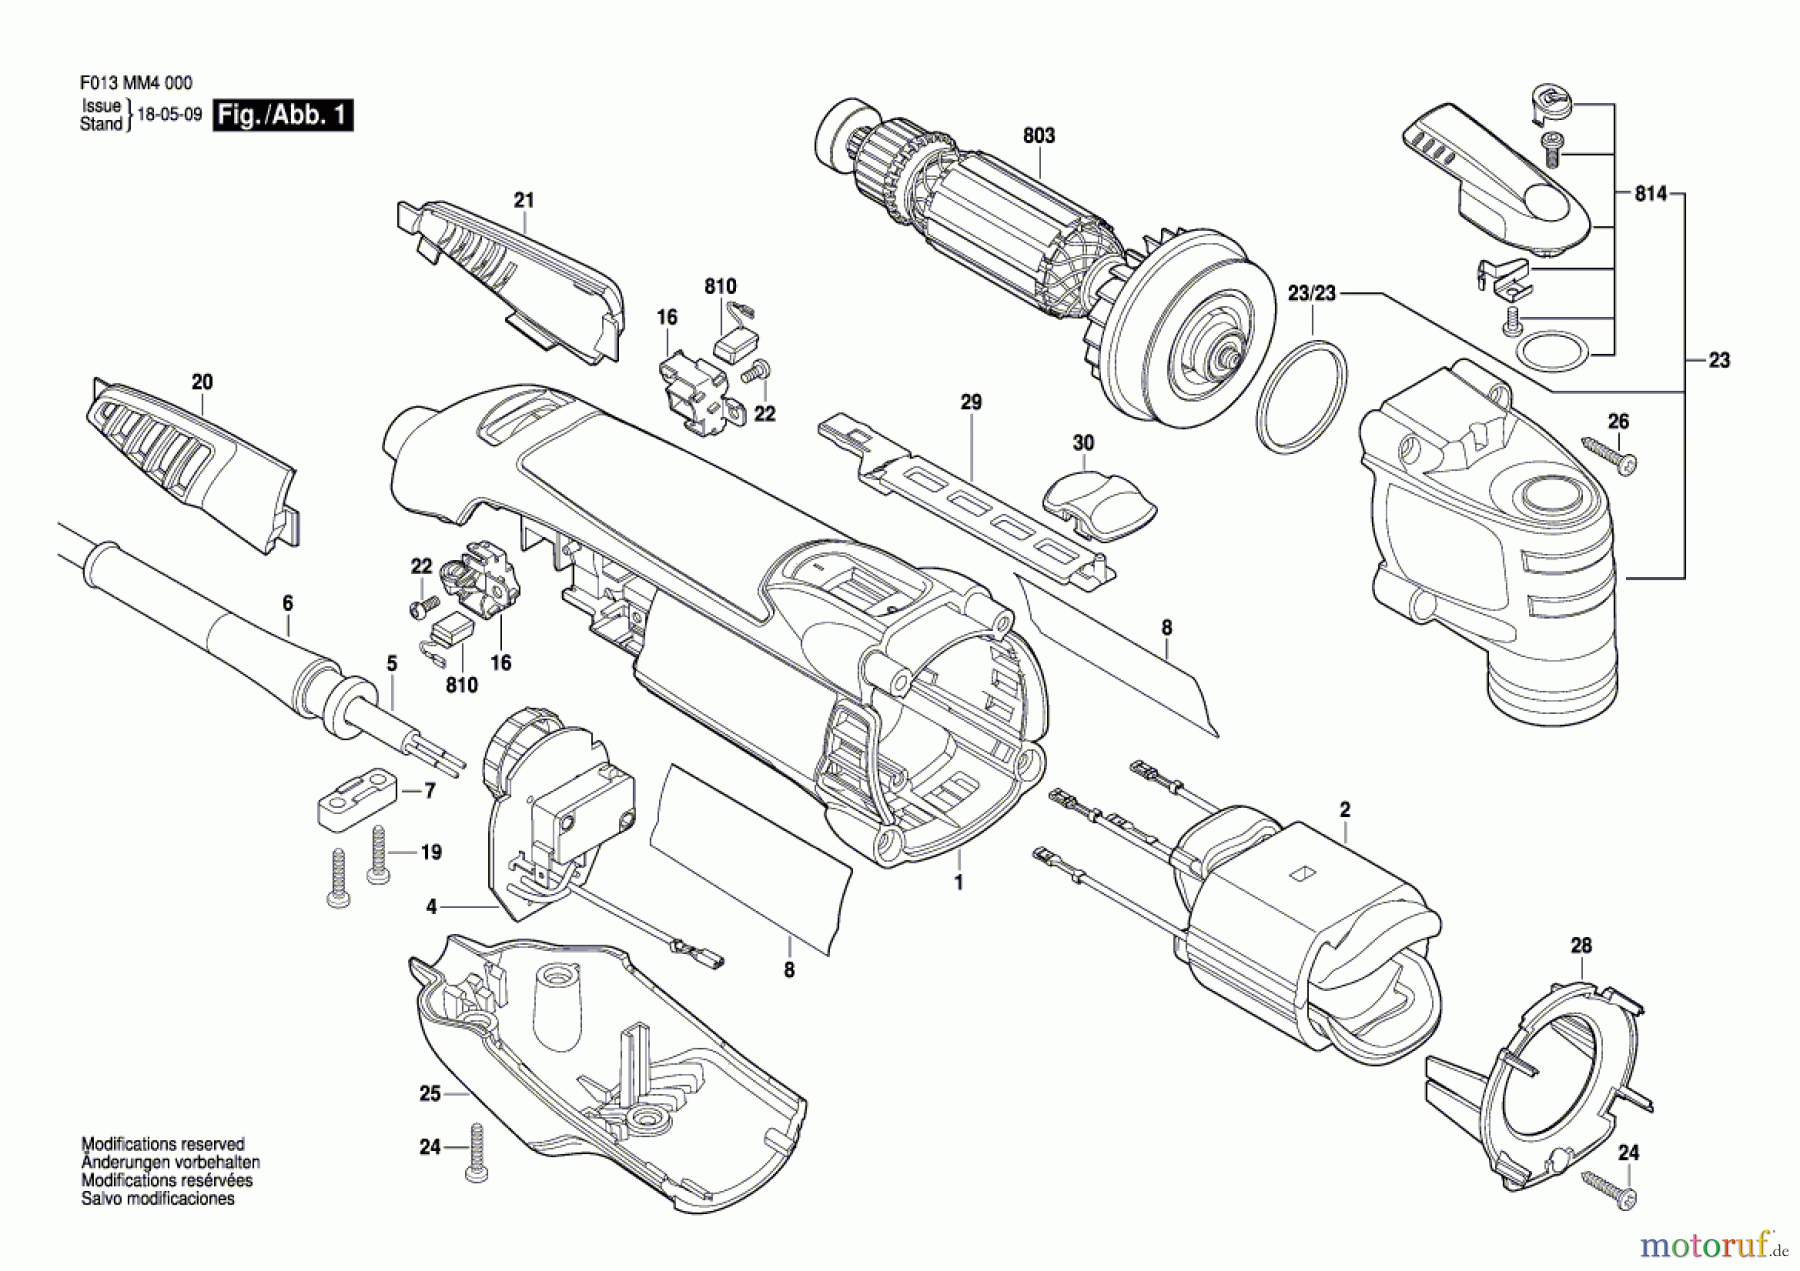  Bosch Werkzeug Multifunktionswerkzeug MM40 Seite 1